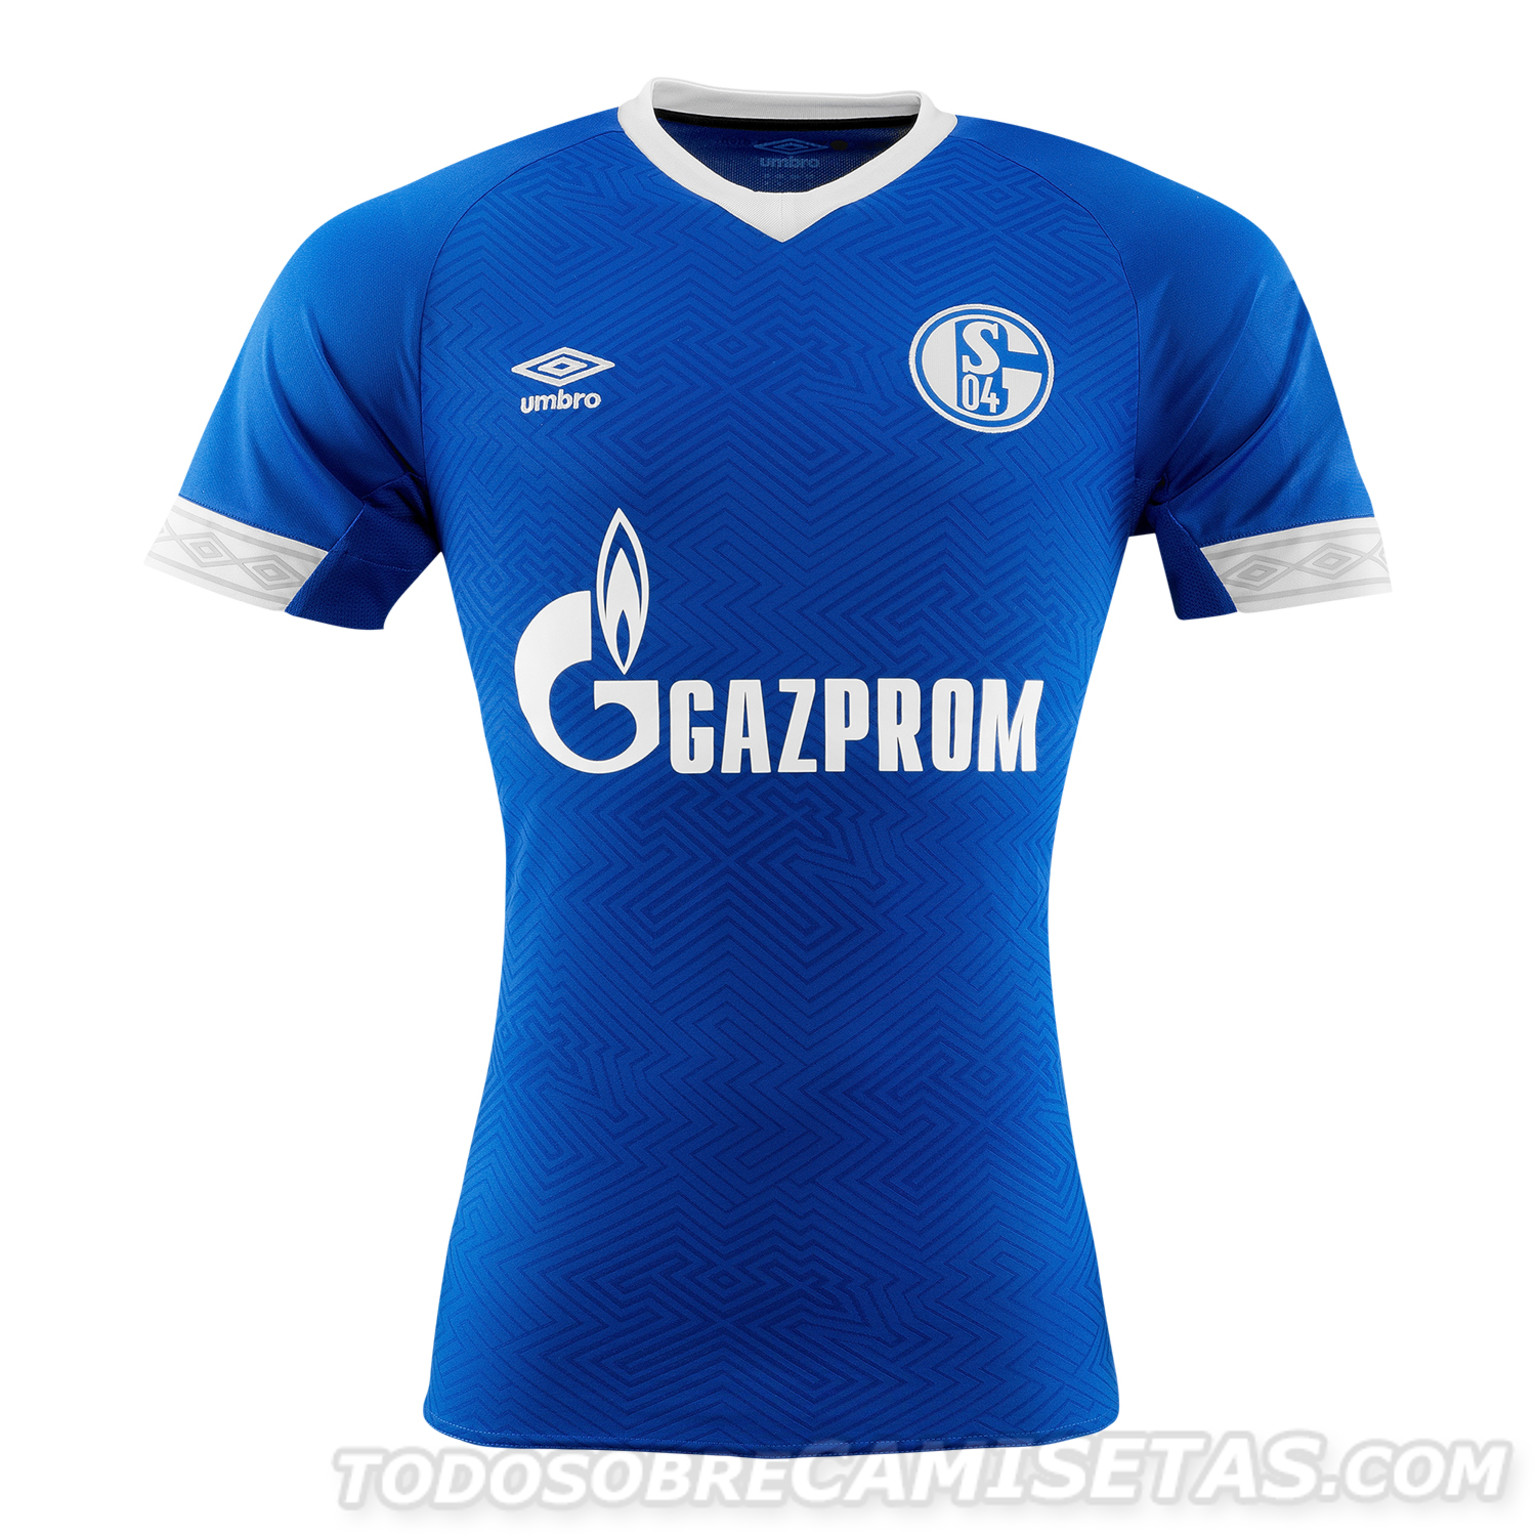 Schalke 04 Umbro Home Kit 2018-19